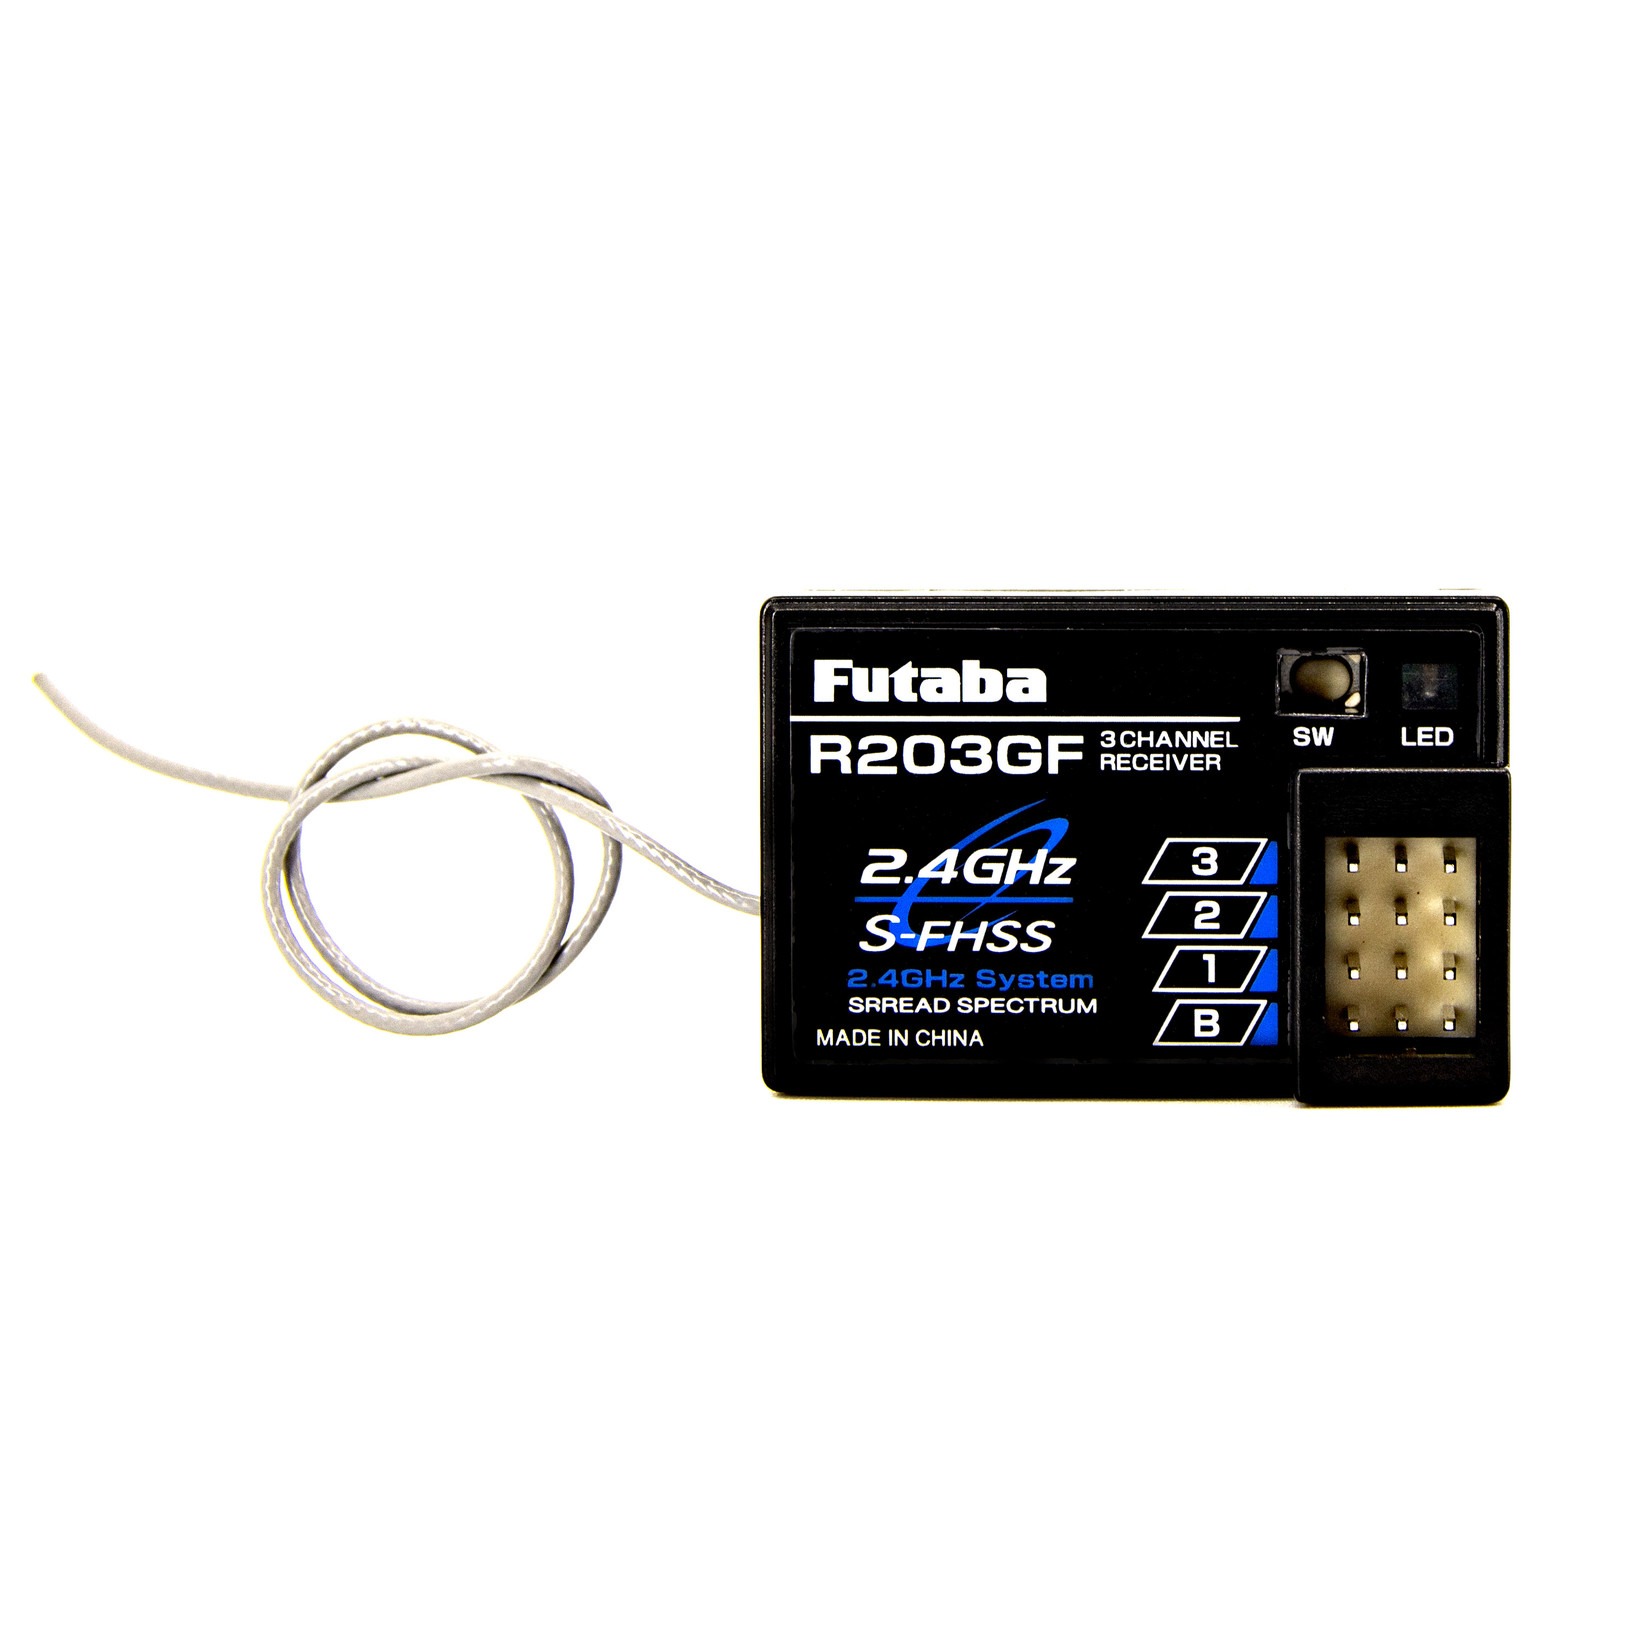 Futaba FUT01102237-3   R203GF 2.4GHz S-FHSS 3-Channel Receiver